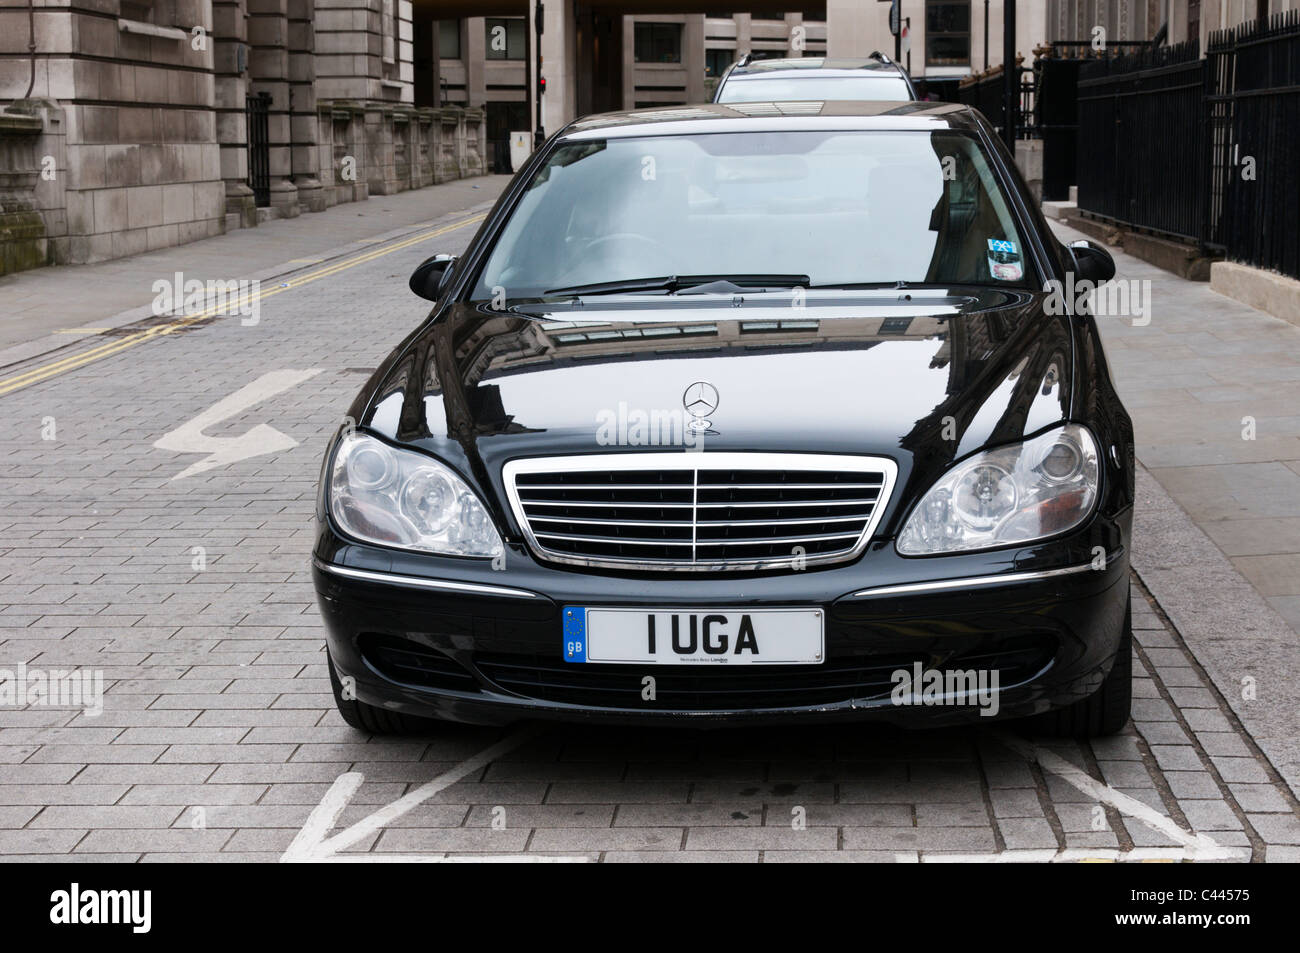 Eine ugandische diplomatischen mit persönlicher Eitelkeit Kennzeichen Auto im zentralen London. Stockfoto